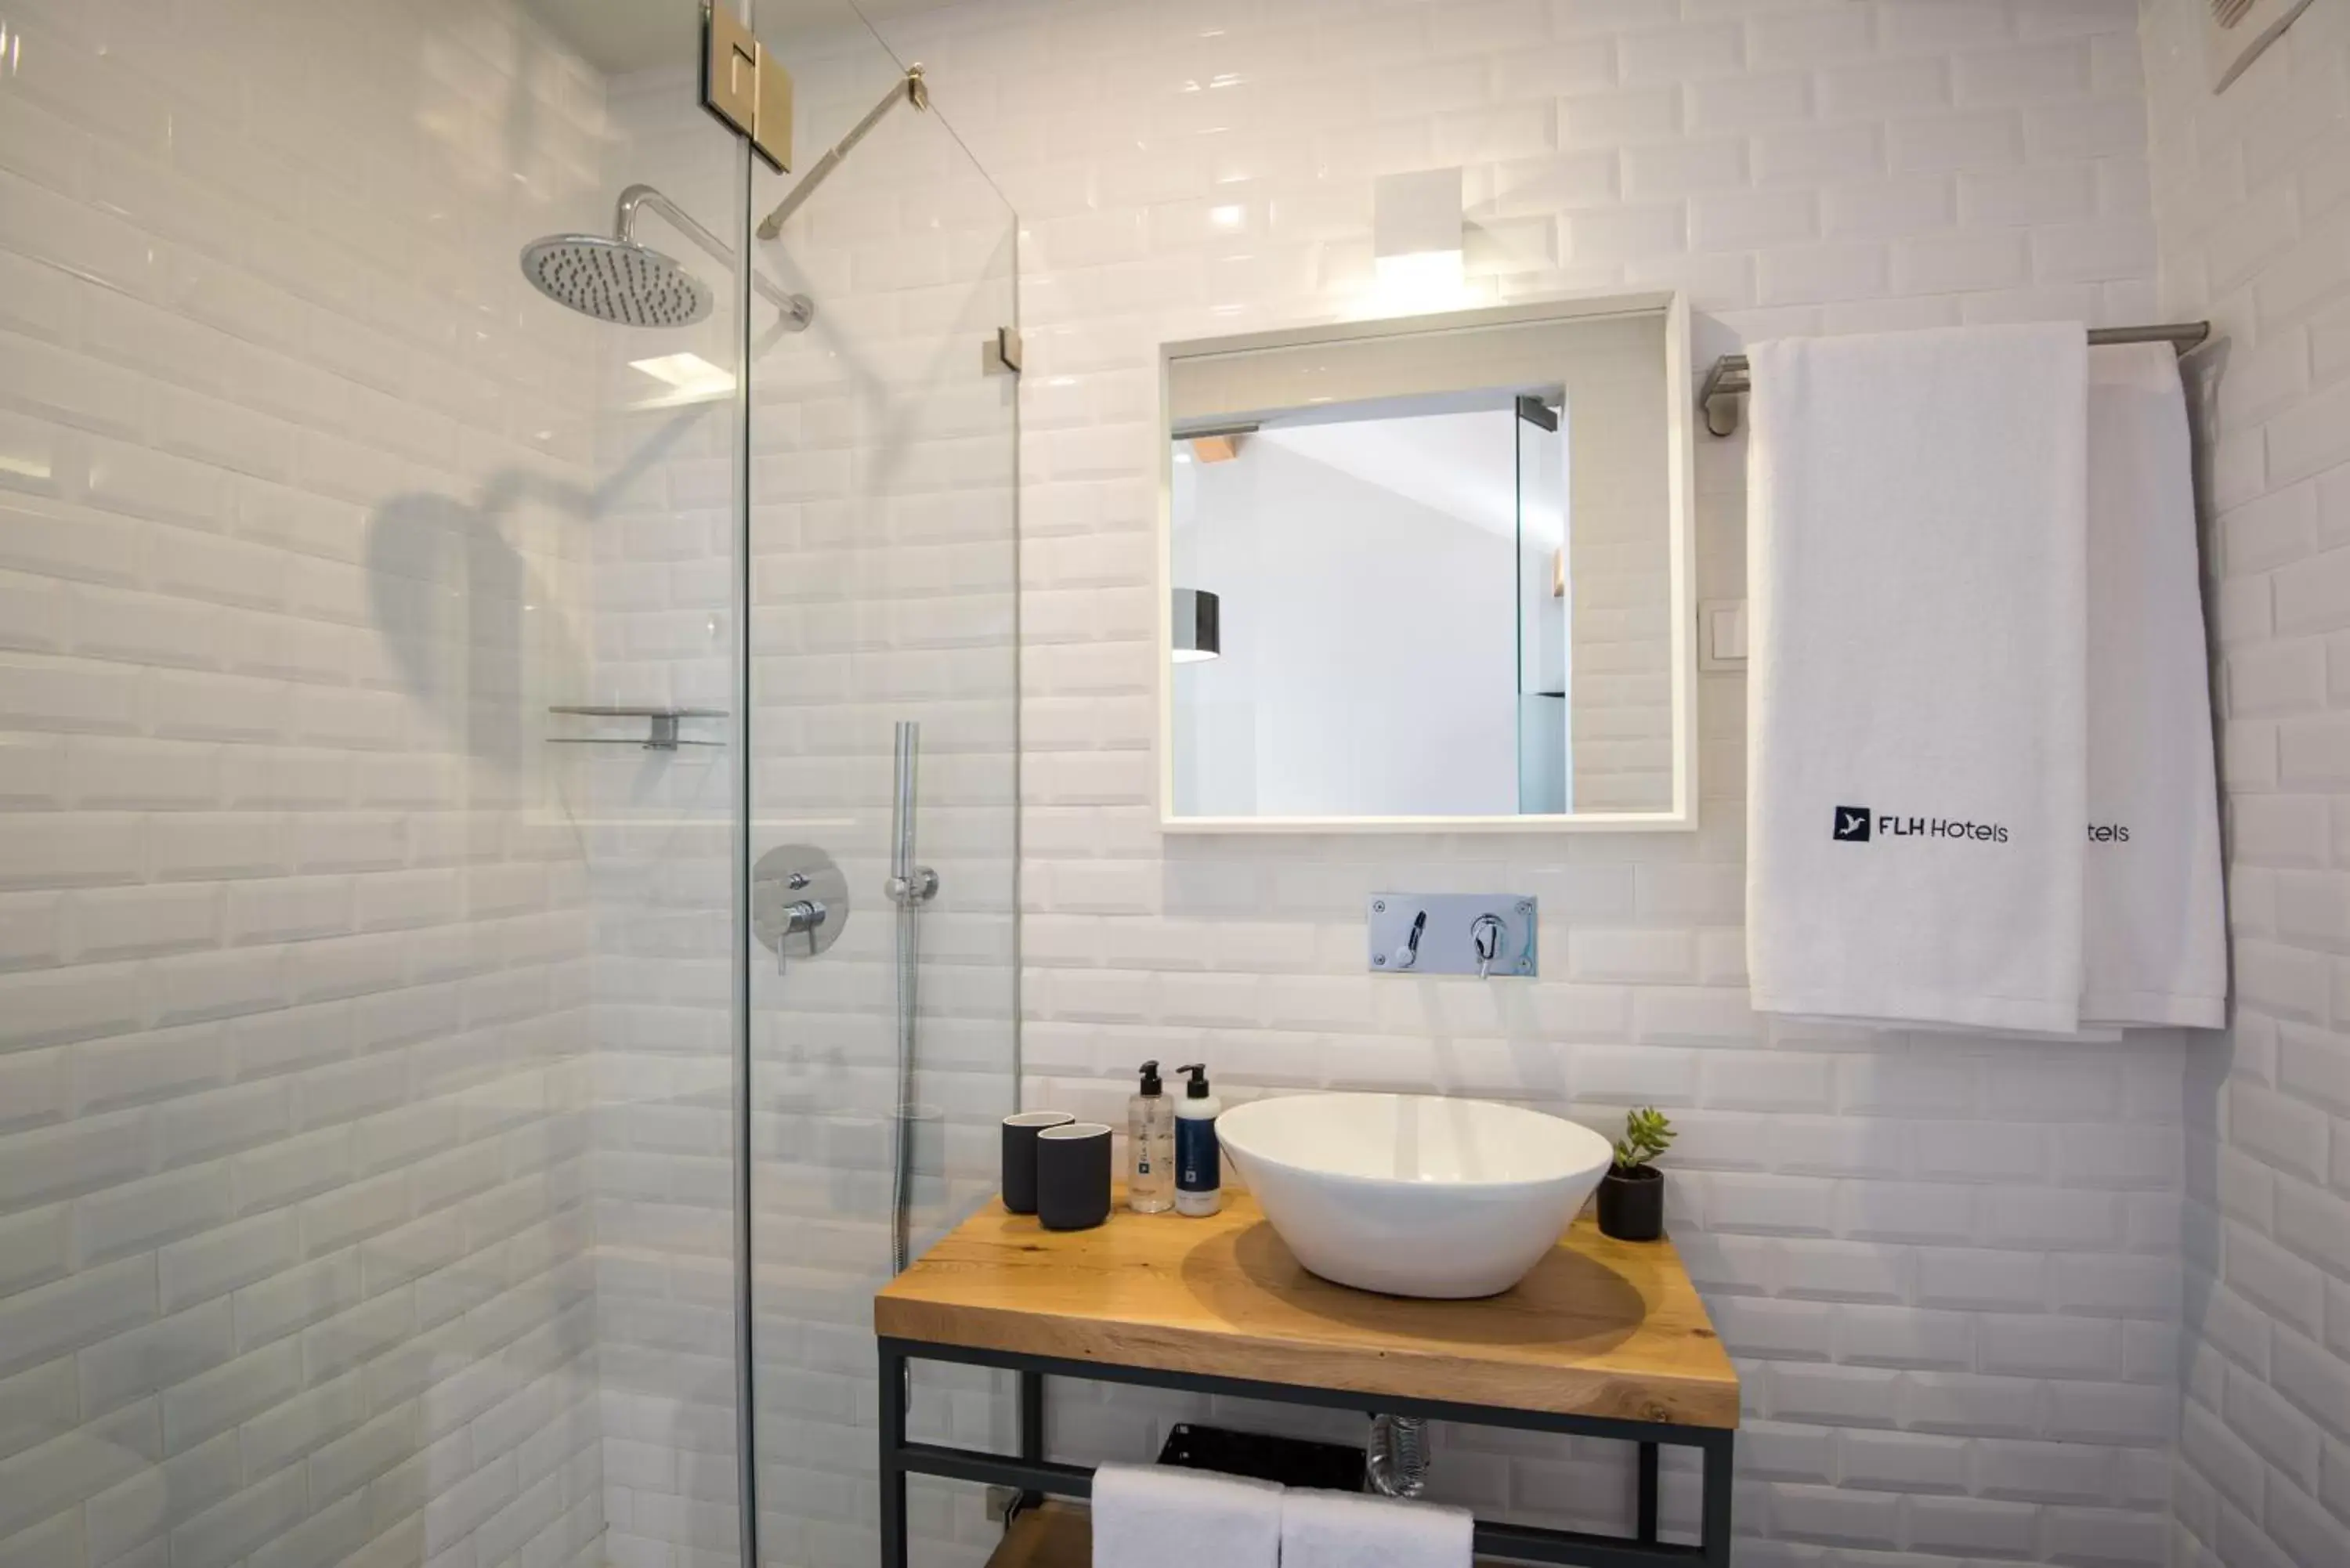 Bathroom in Urbano FLH Hotels Lisboa